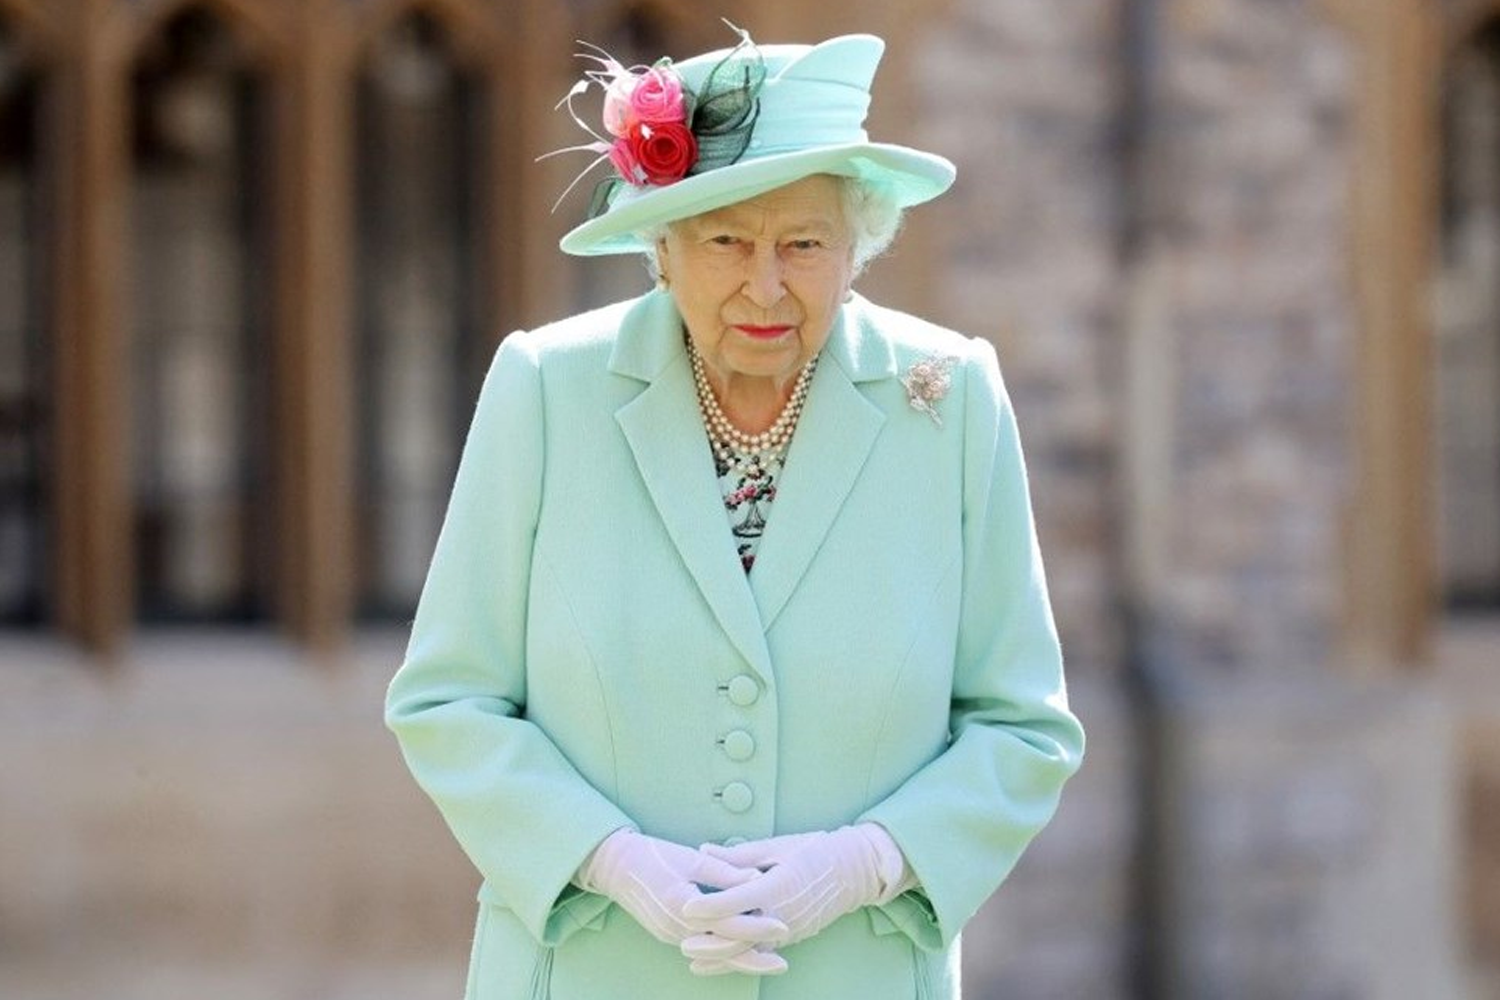 Prens Philip'in ölümünden sonra Kraliçe Elizabeth'ten emeklilik kararı